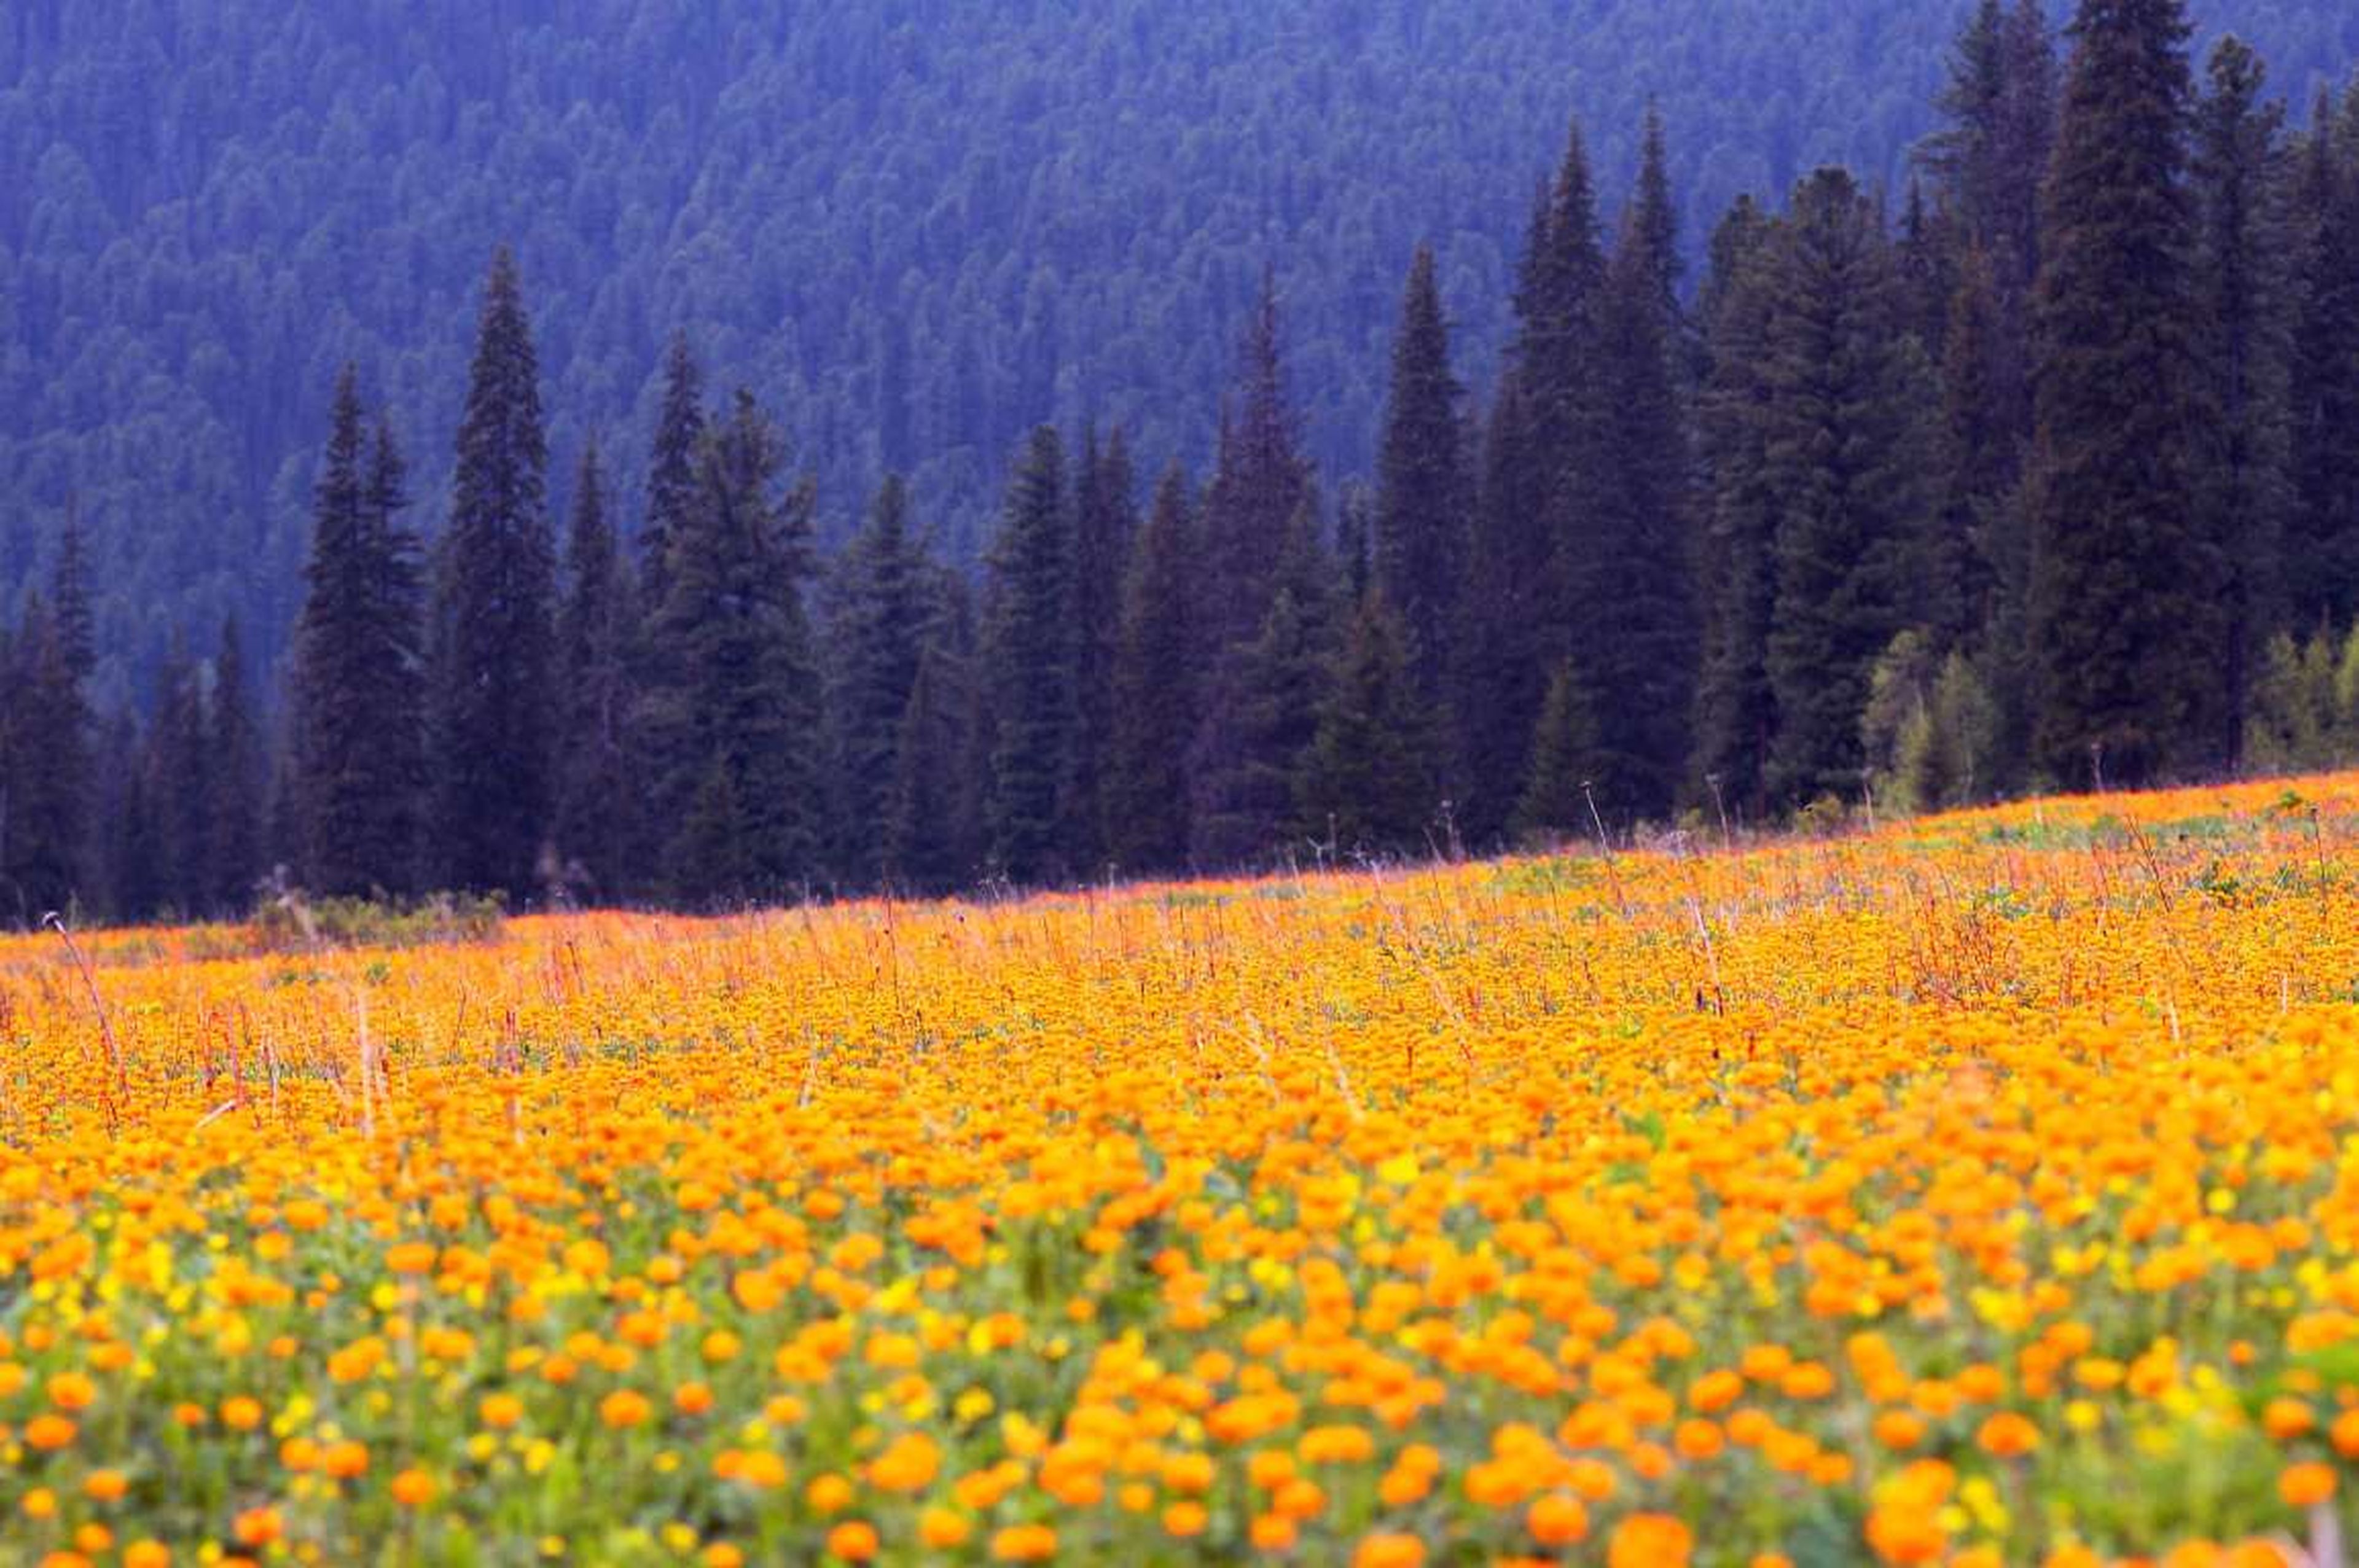 Las flores de Siberia llamadas en aquel país "Zharki" se ven en primer plano y al fondo se aprecian las montañas occidentales de Sayan, al sur de Siberia.